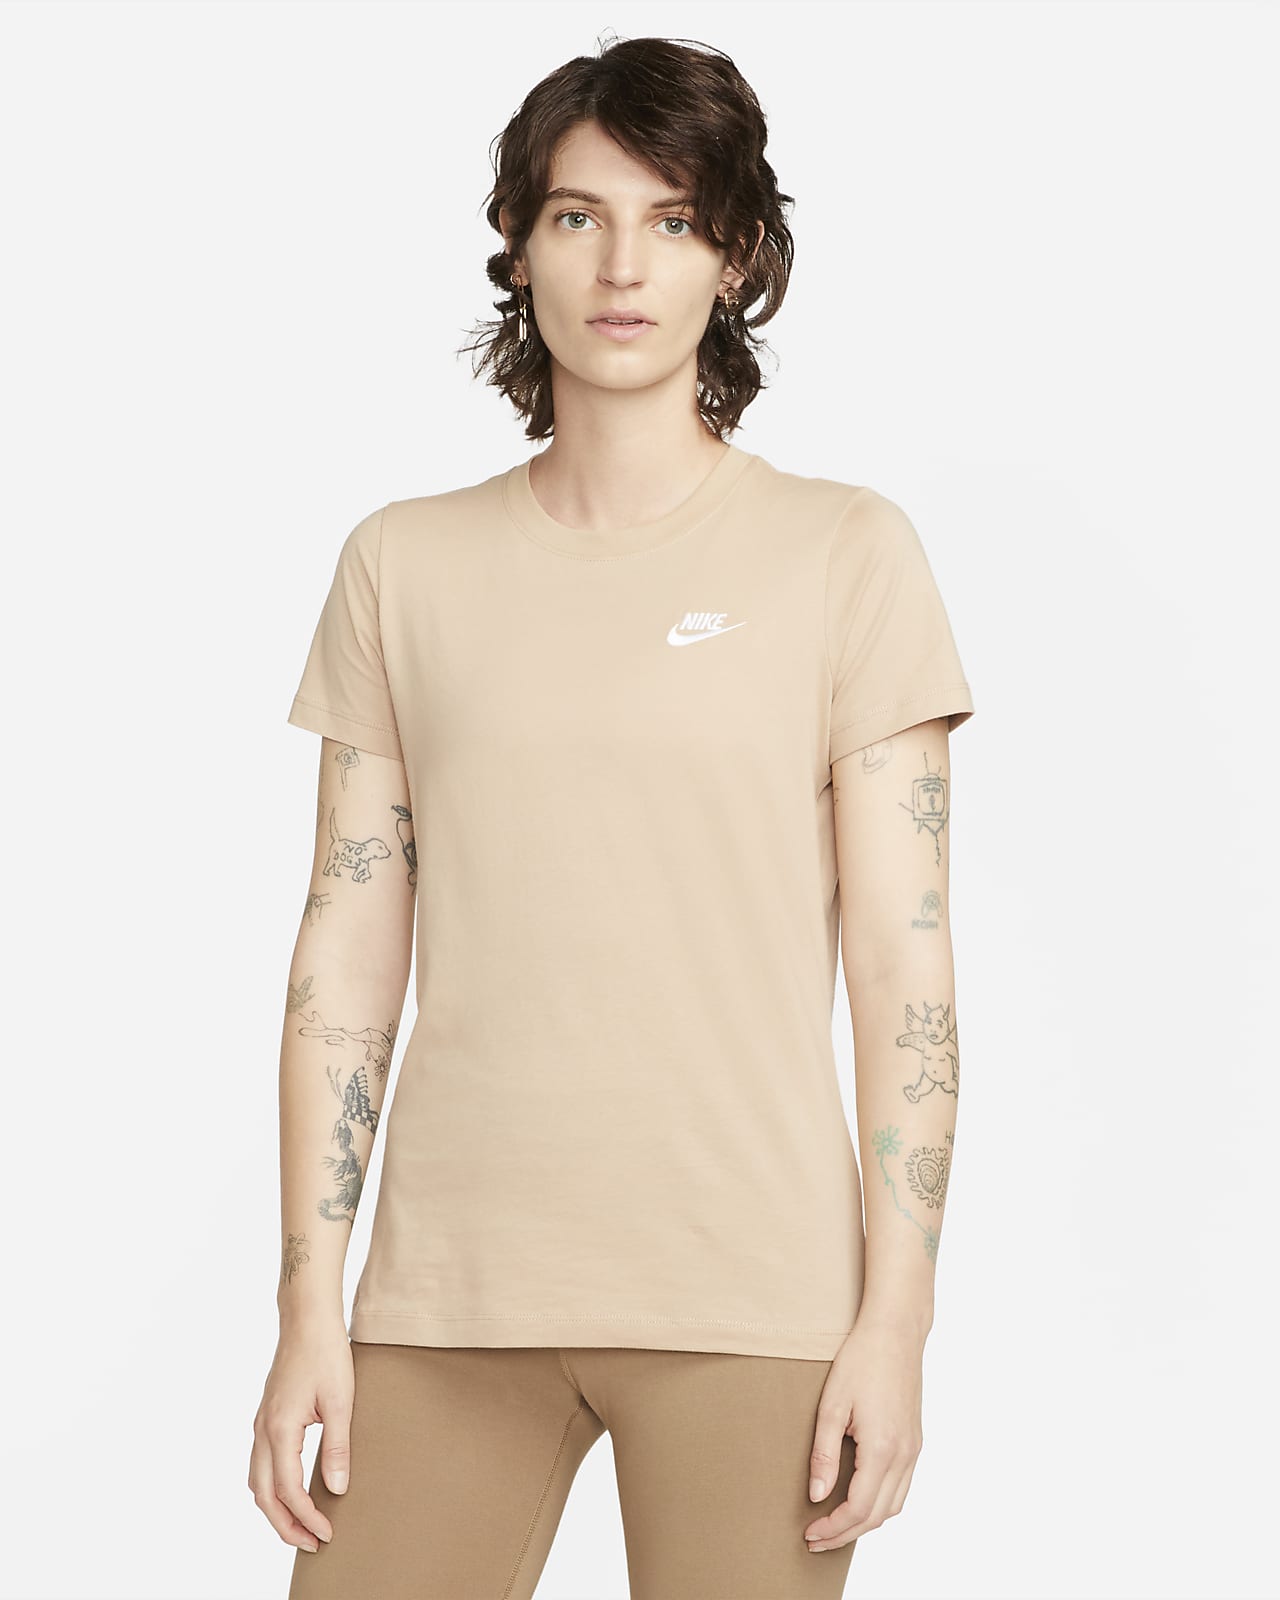 Sportswear Tops & T-Shirts. Nike CA